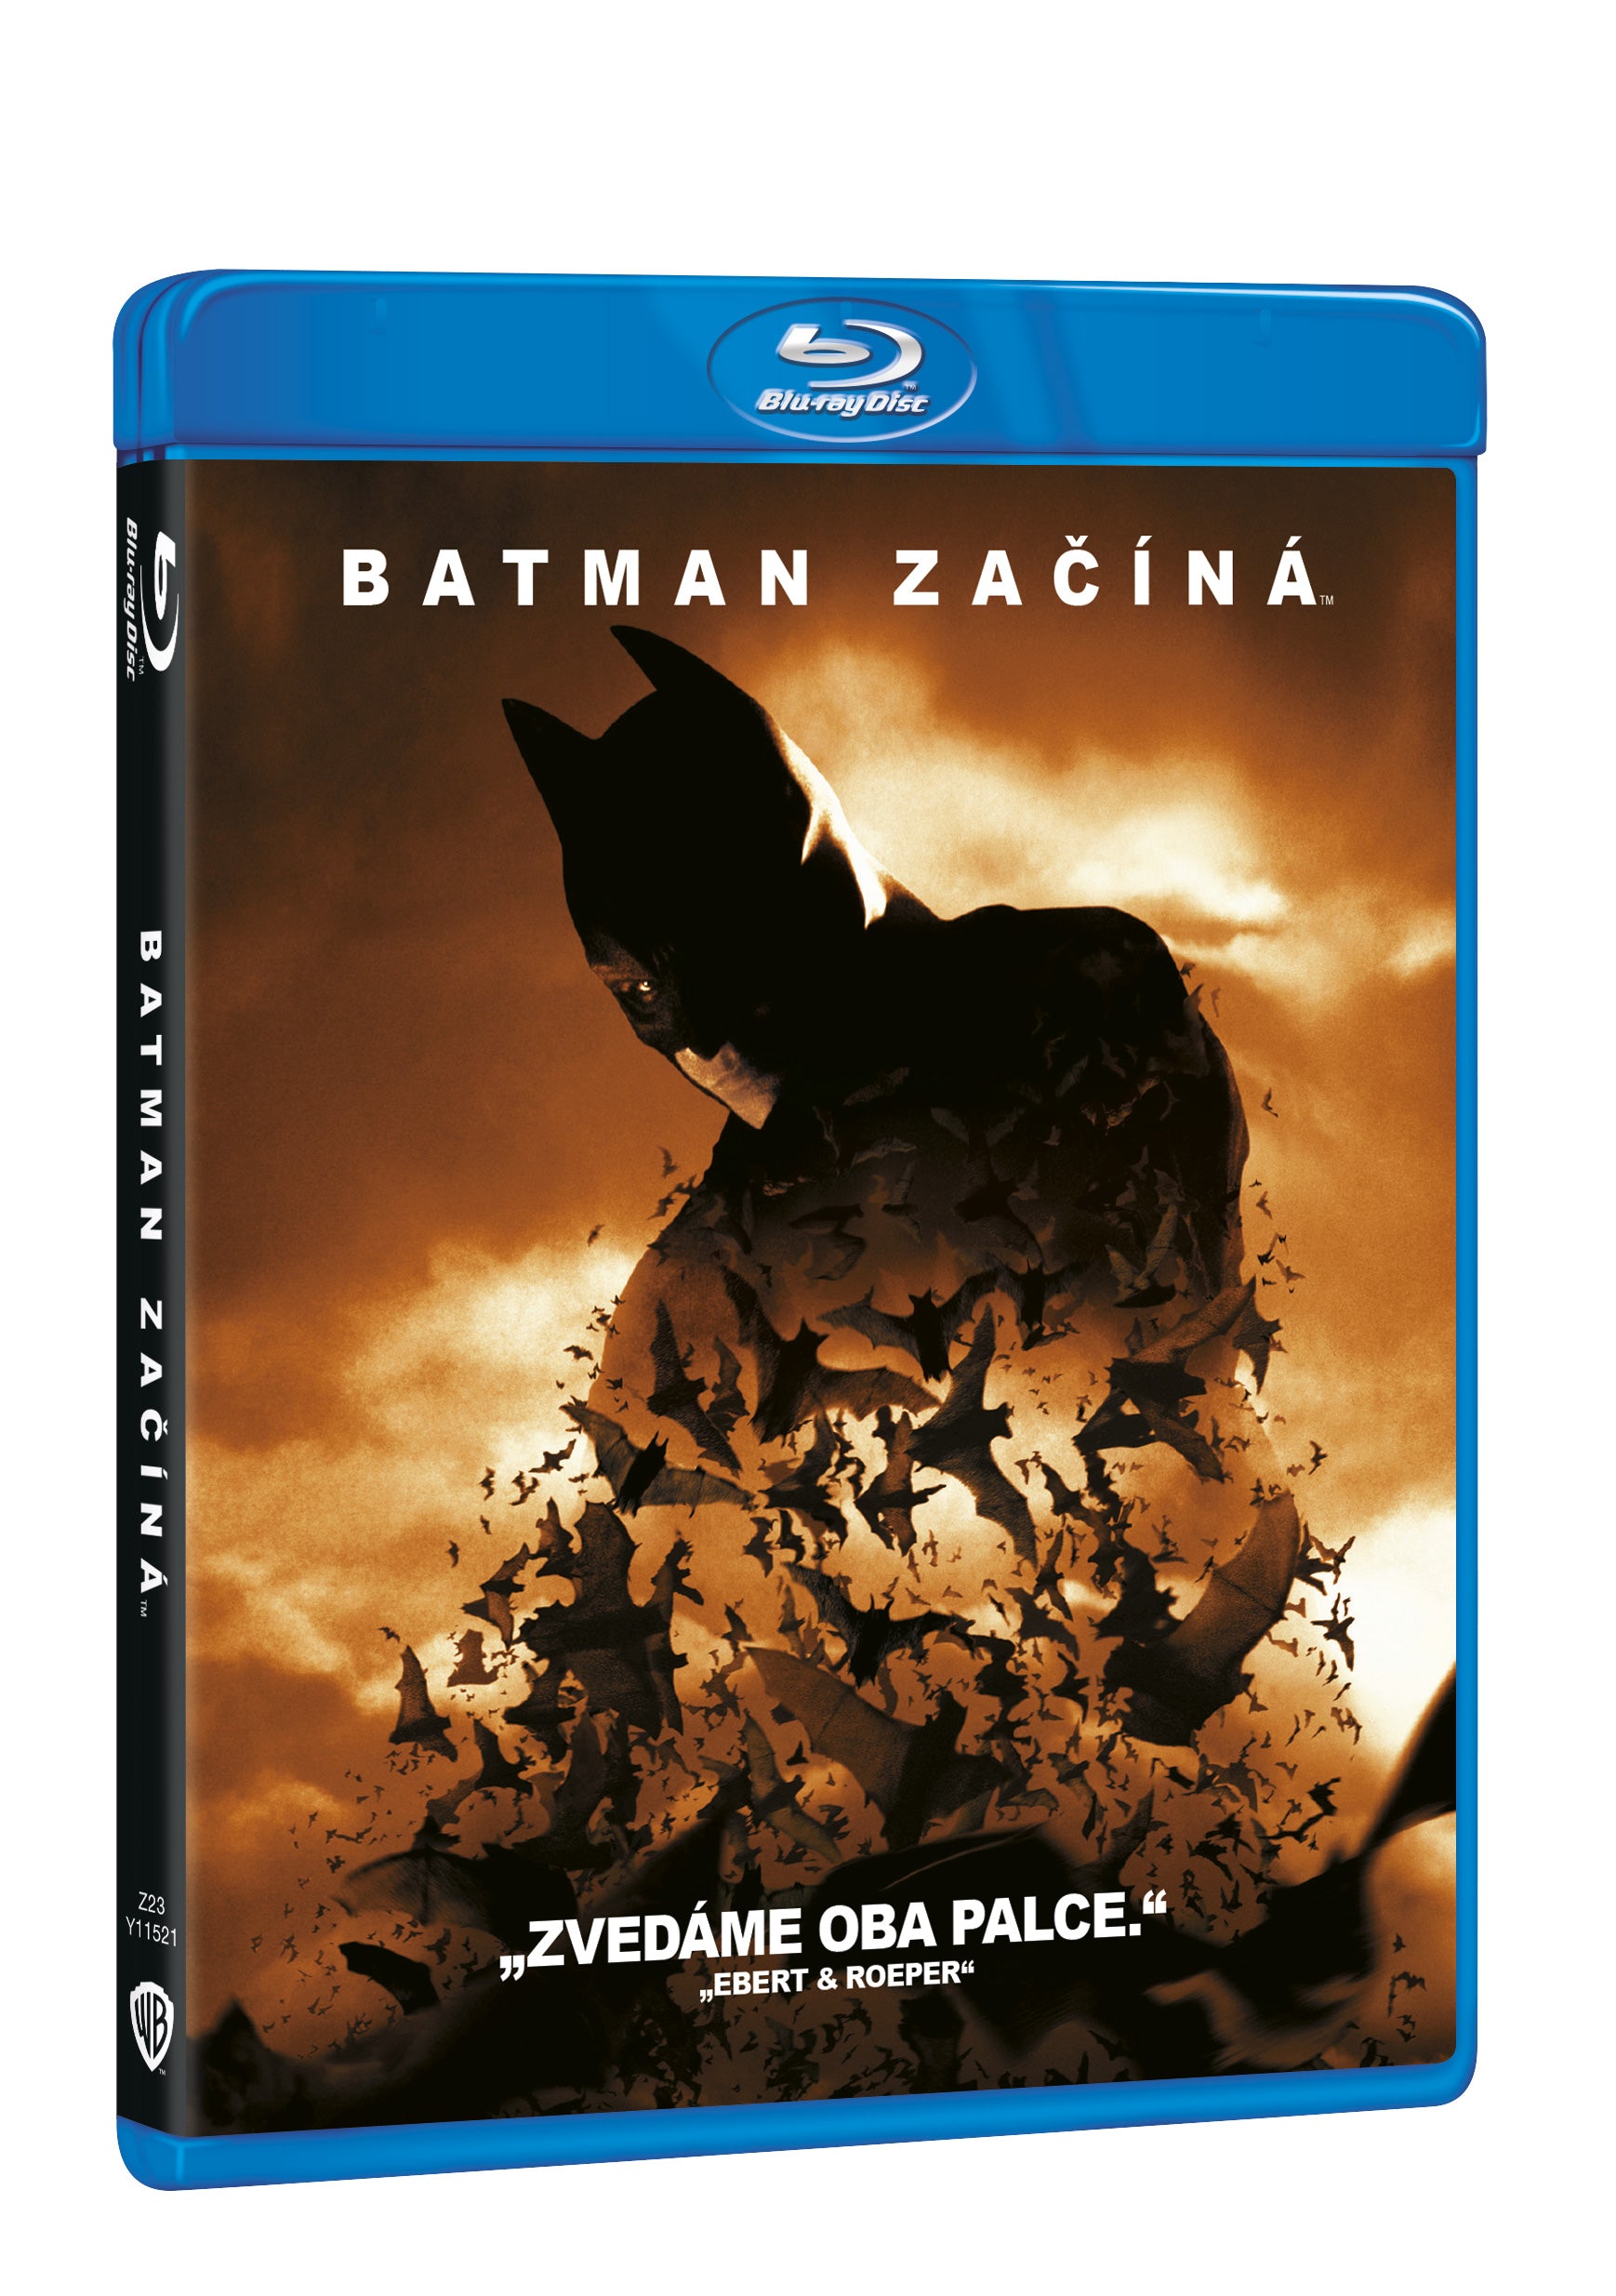 Batman zacina BD / Batman Begins - Czech version